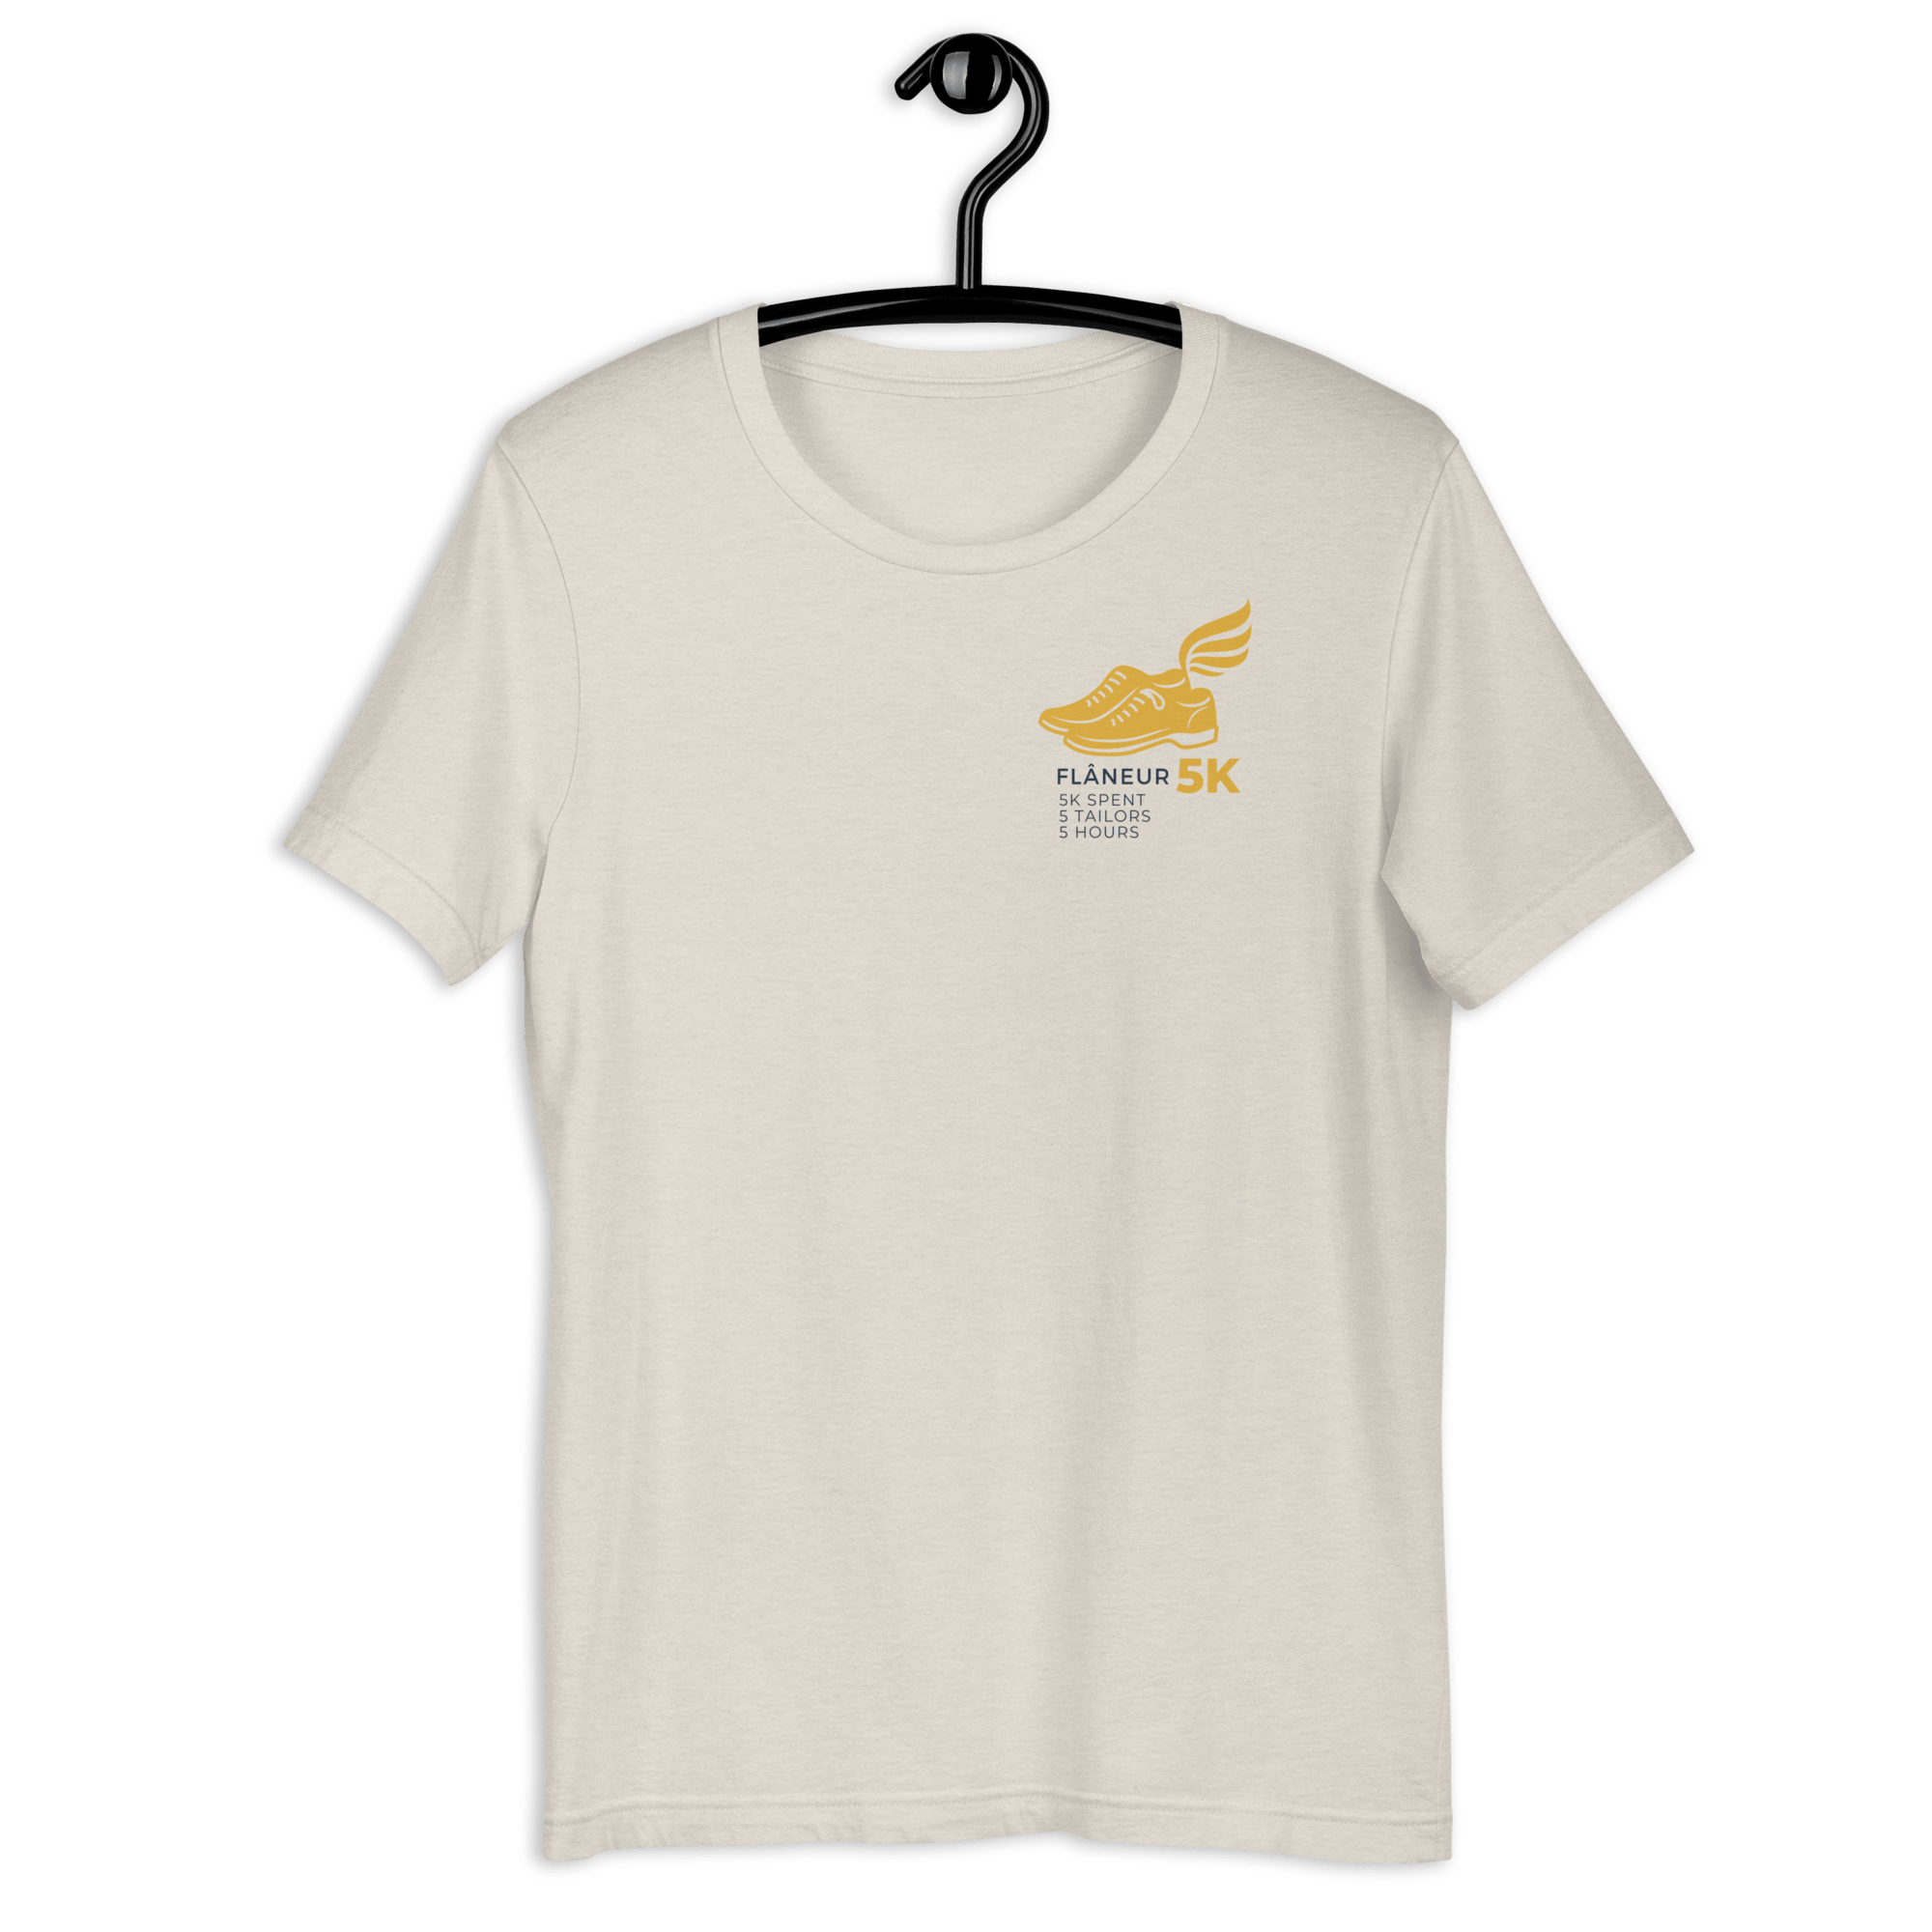 Flaneur 5K T-shirt Heather Dust / S Shirts & Tops Jolly & Goode